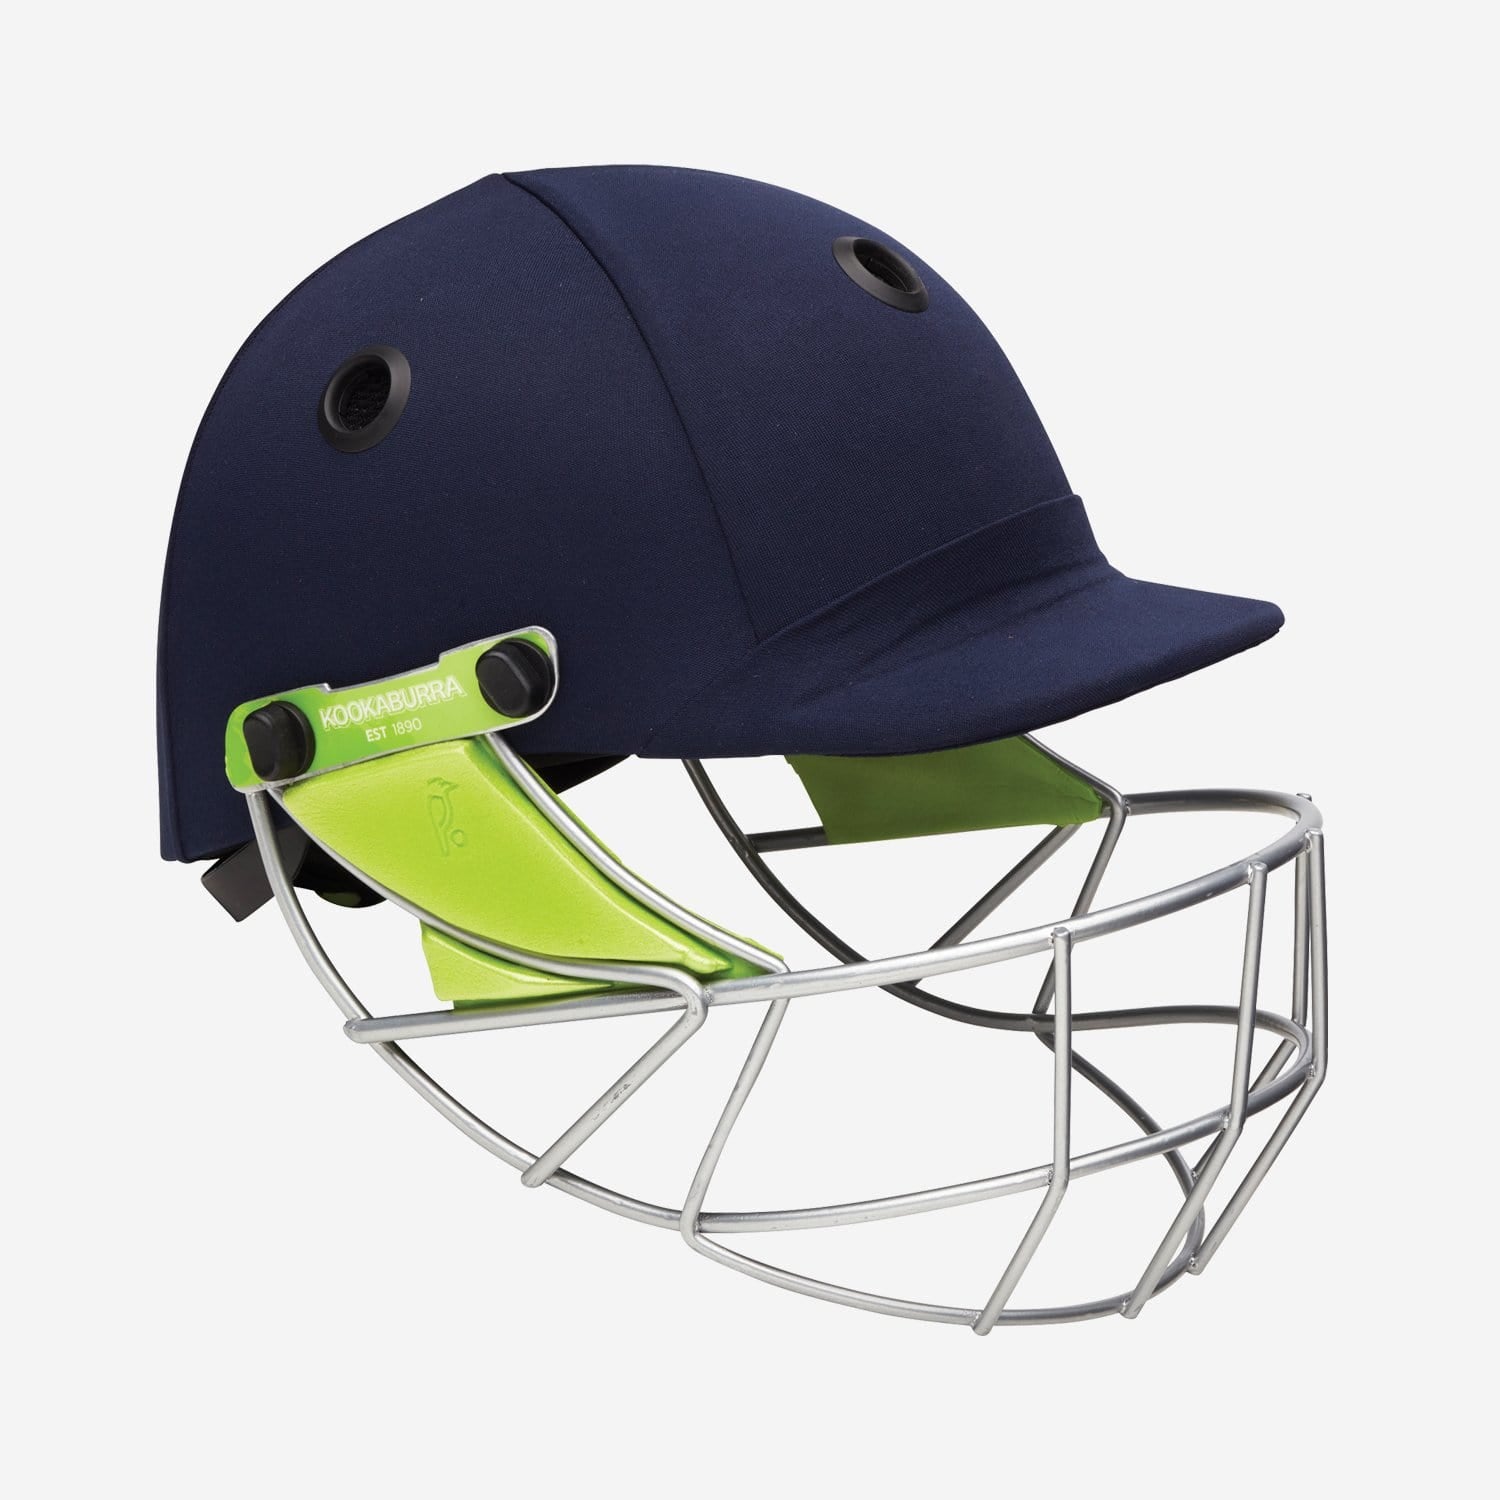 Kookaburra Helmet Kookaburra Pro 600 Cricket Helmet